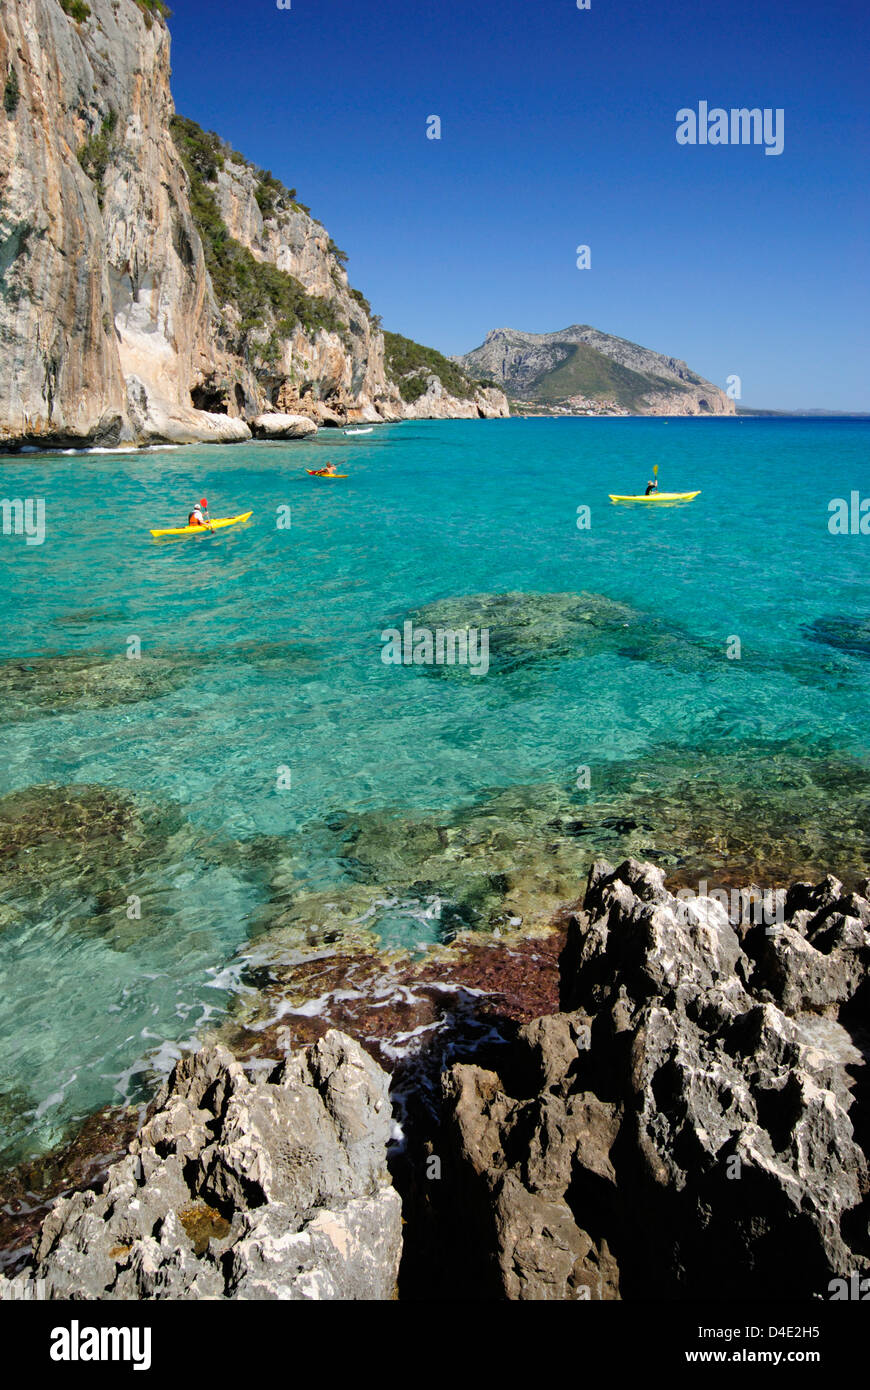 Touristen mit Kajaks die transparente Gewässer des Mittelmeeres entlang der Küste von Cala Gonone, Golf von Orosei, Sardinien Segeln Stockfoto